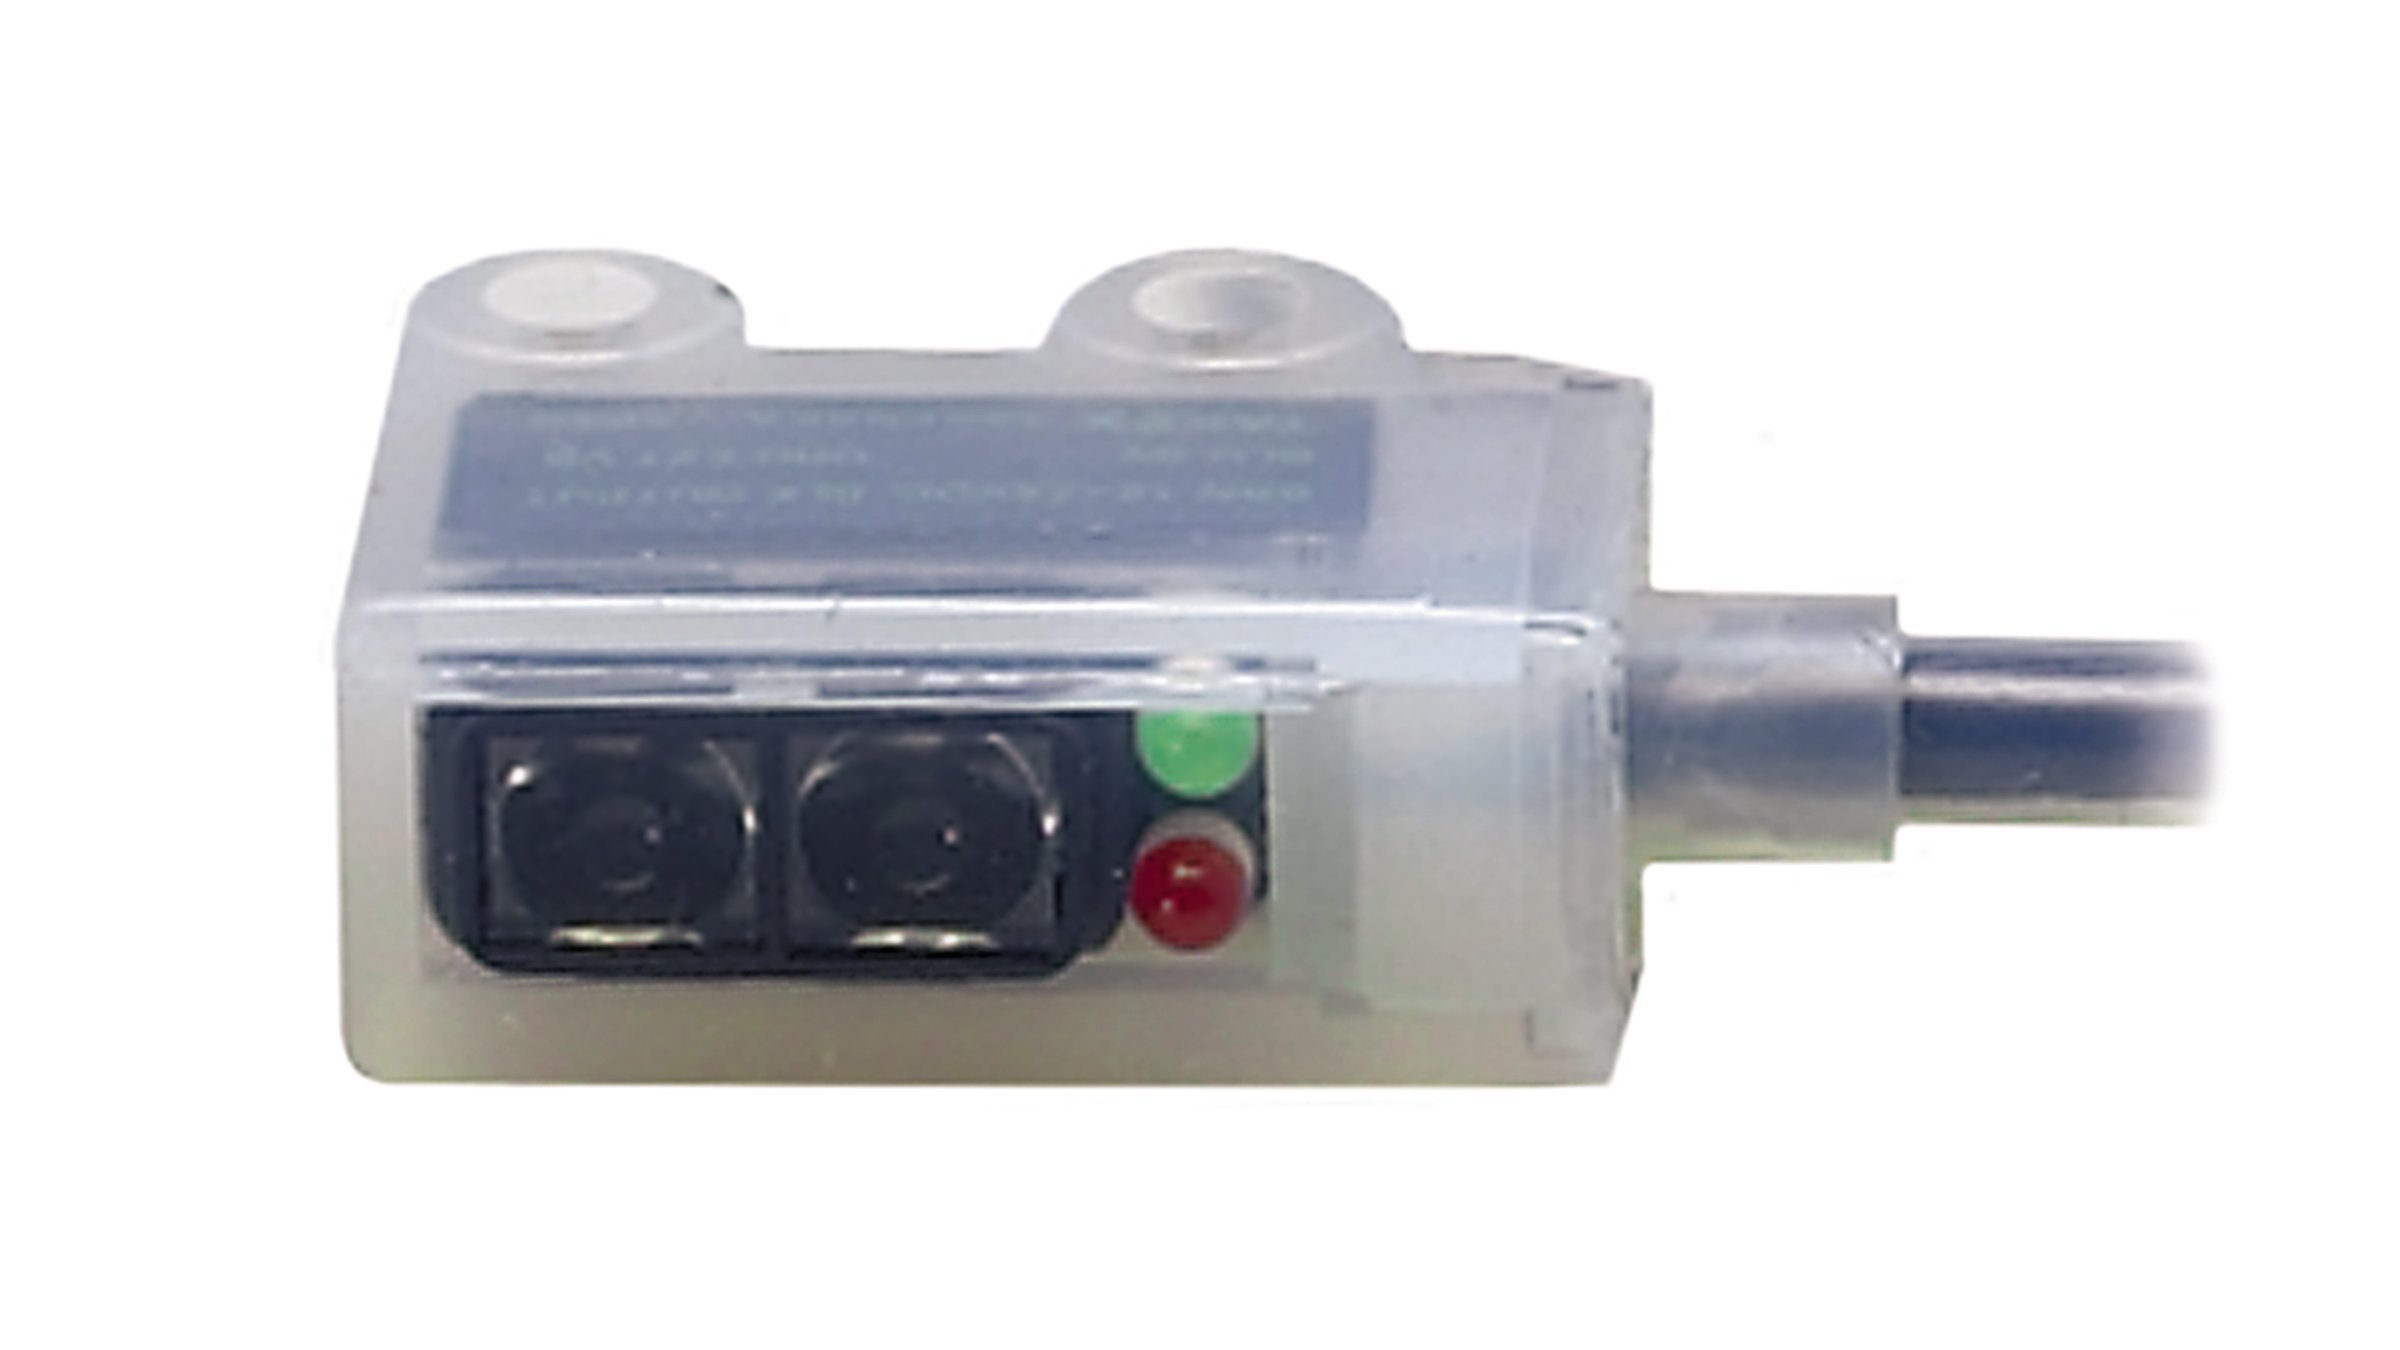 Lichtdurchlässiger Sensor von Allen-Bradley mit roter und grüner LED-Anzeige und integriertem Kabel.